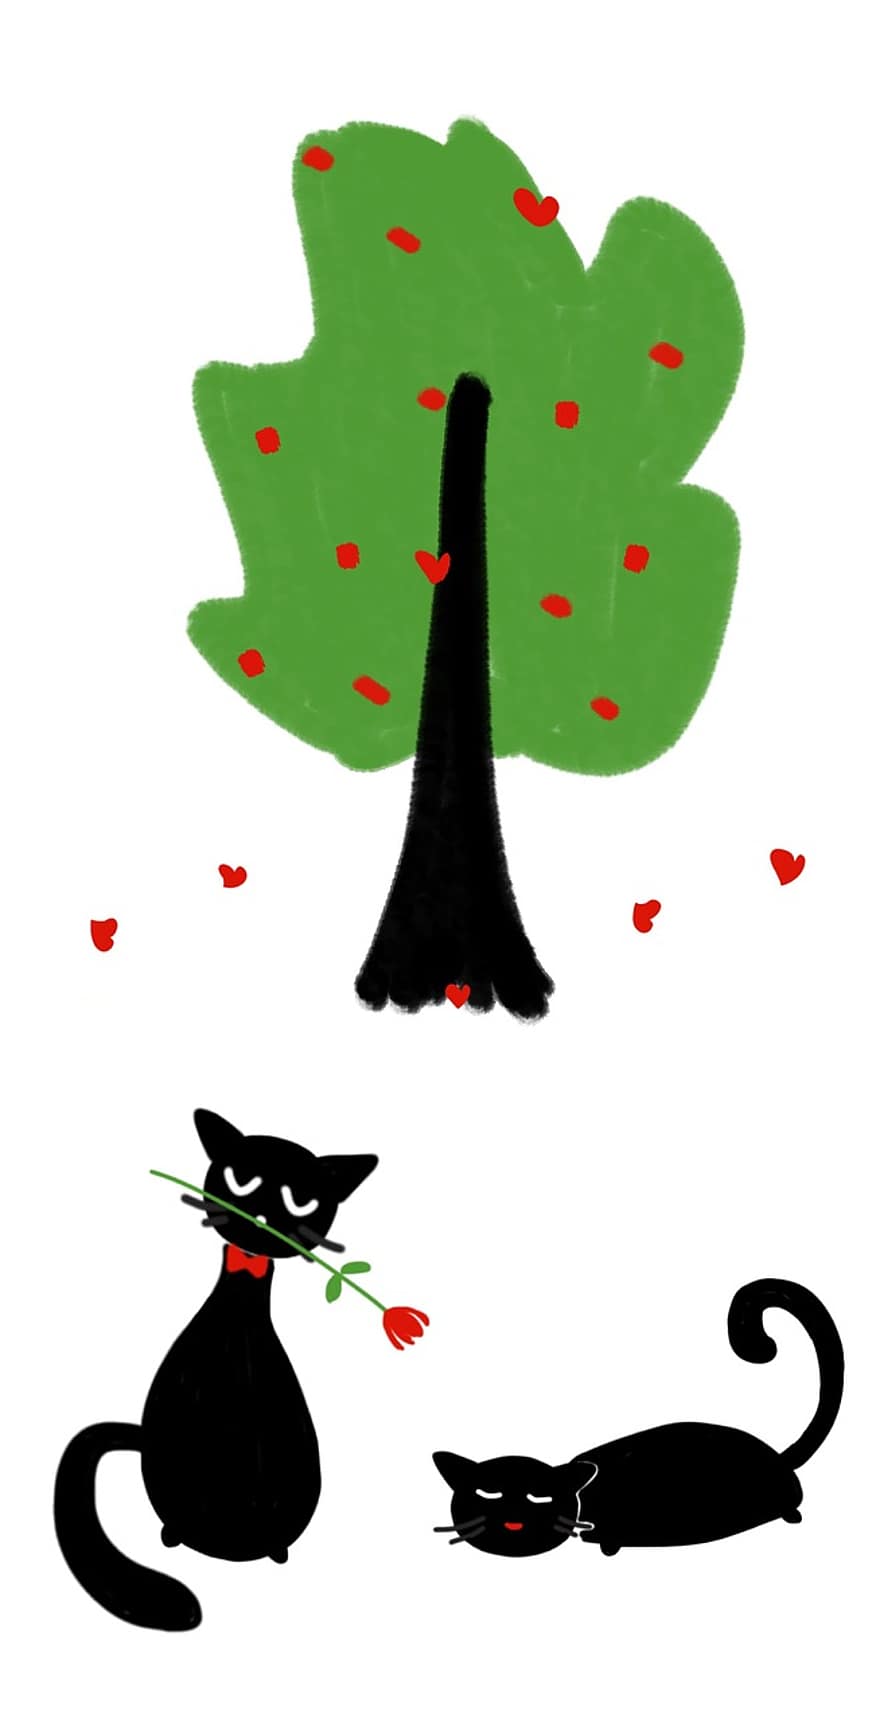 बिल्ली, पेड़, प्रेम, वैलेंटाइन दिवस, दिल, हरा वृक्ष, प्यार में बिल्लियाँ, काली बिल्ली, गुलाब का फूल, फूल, प्रेम प्रसंगयुक्त